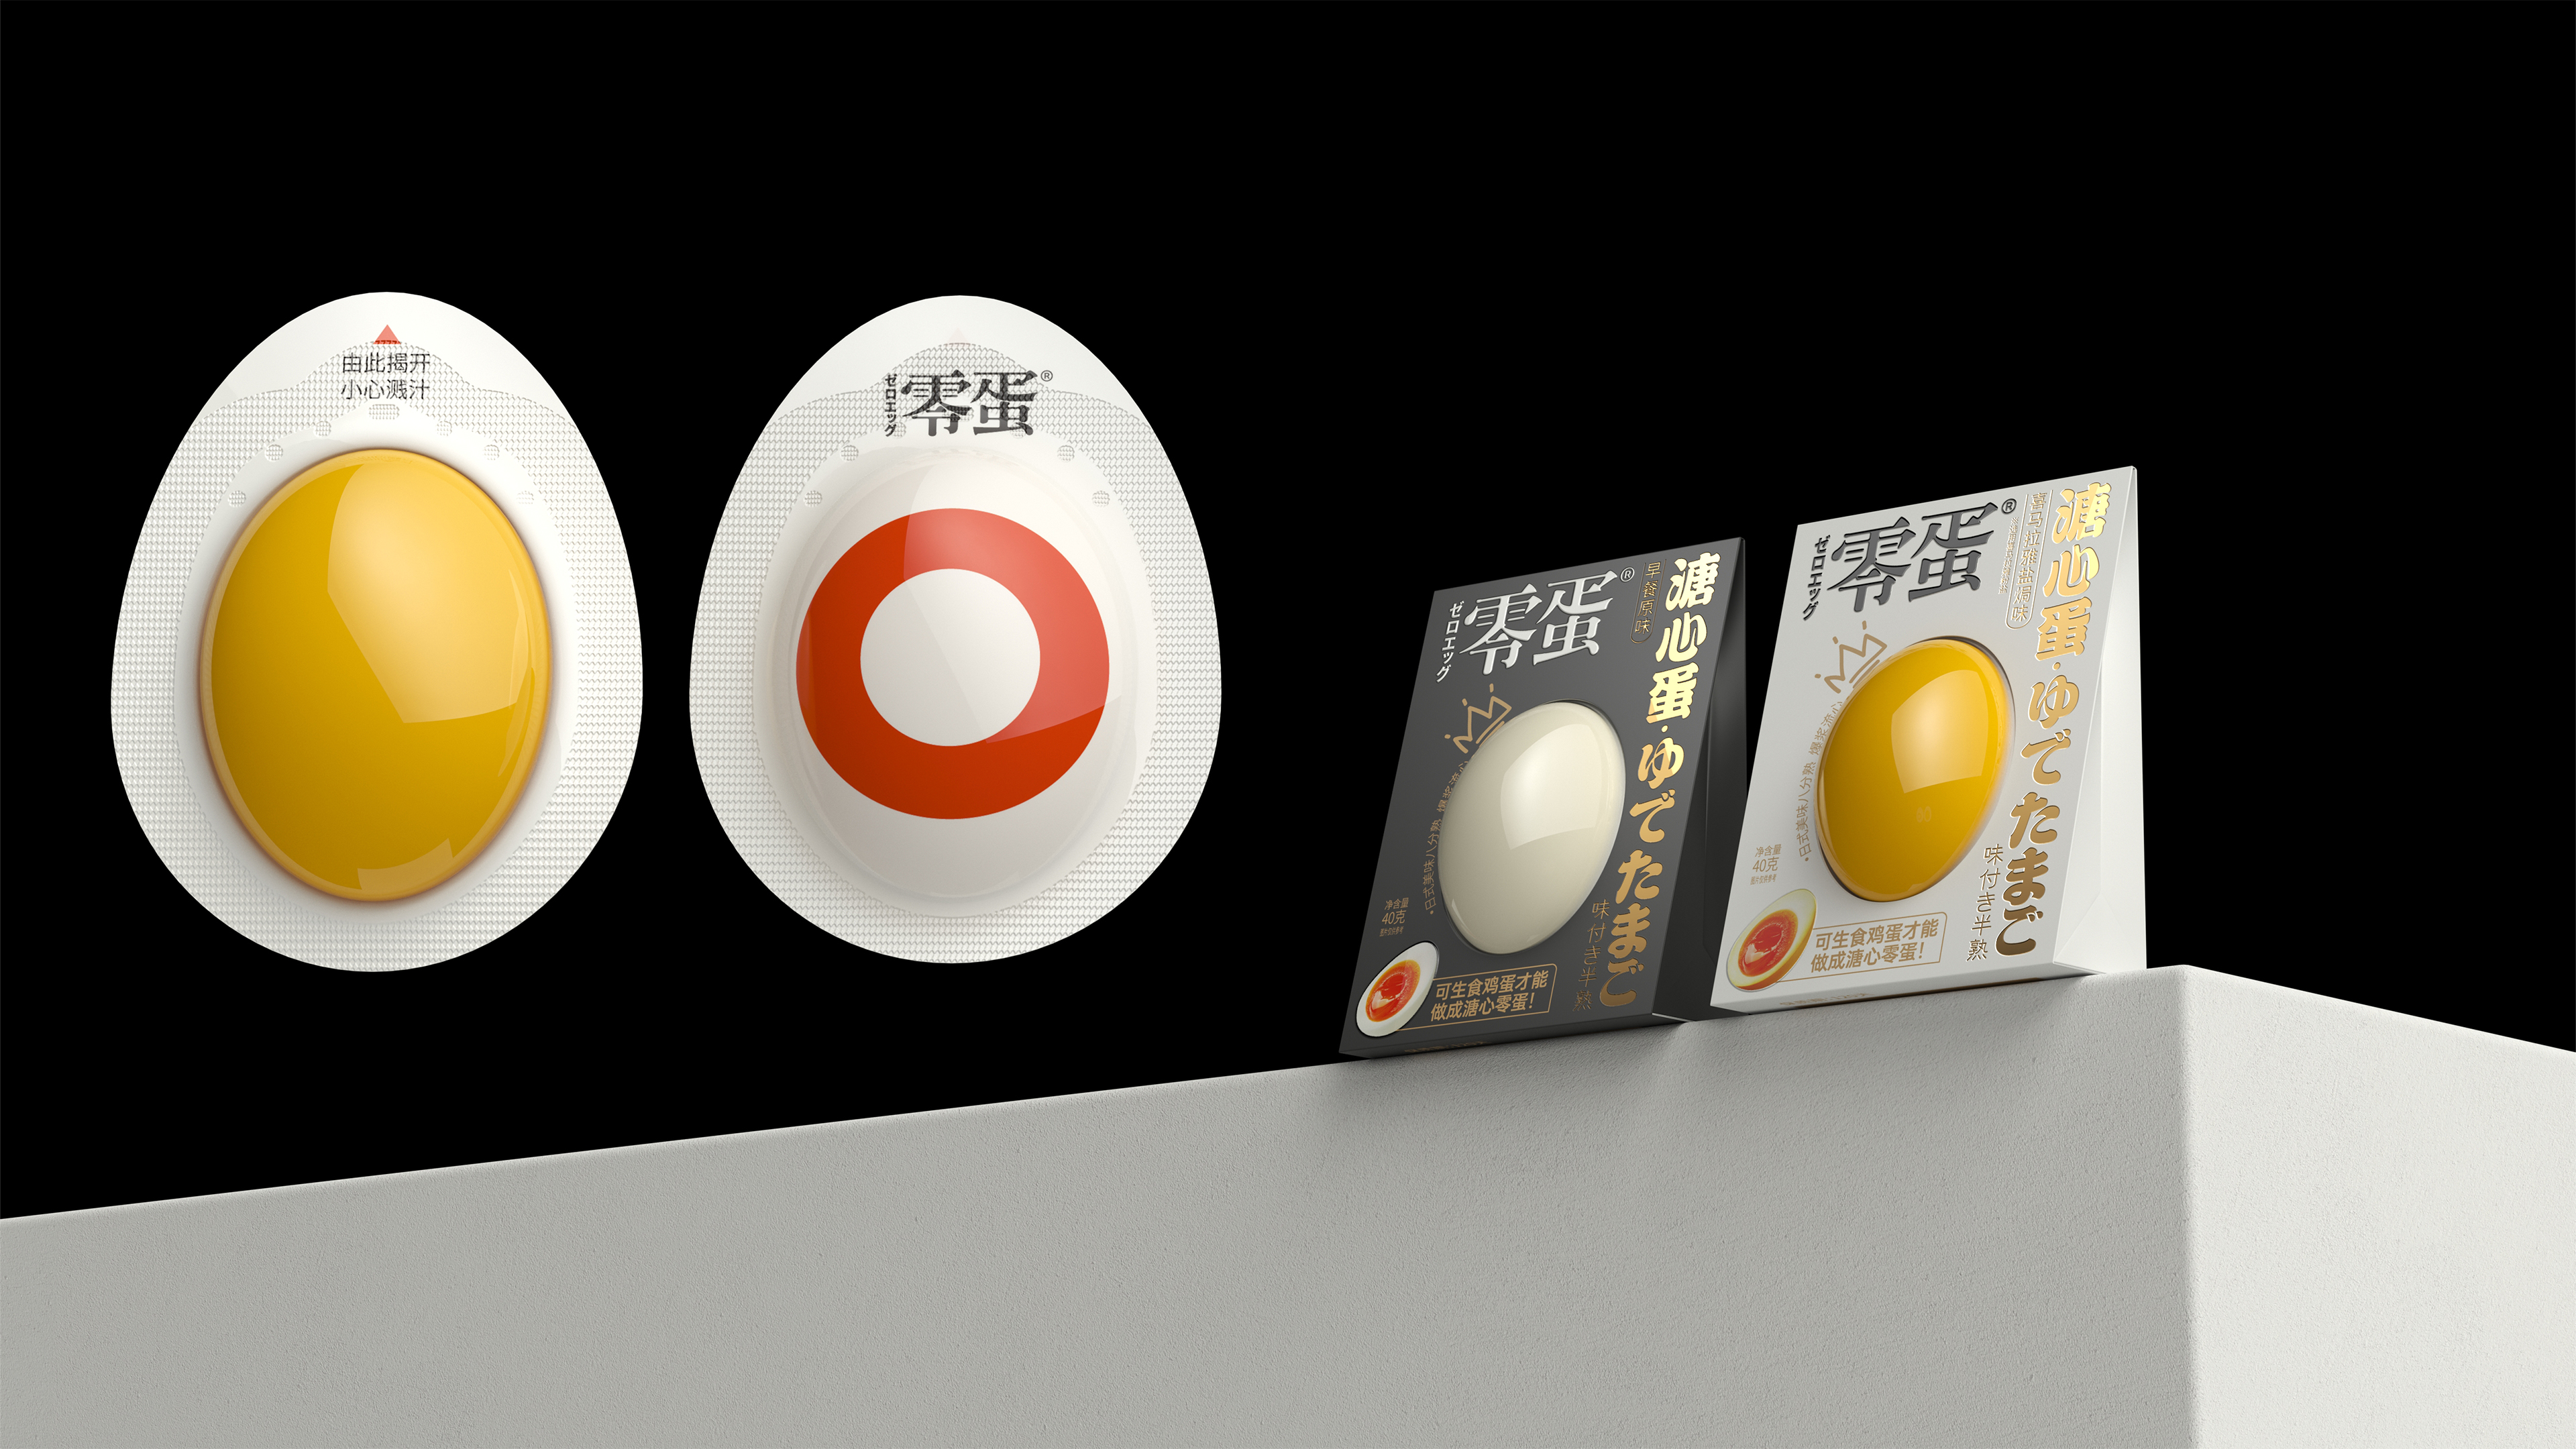 Oegg Soft-boiled Egg